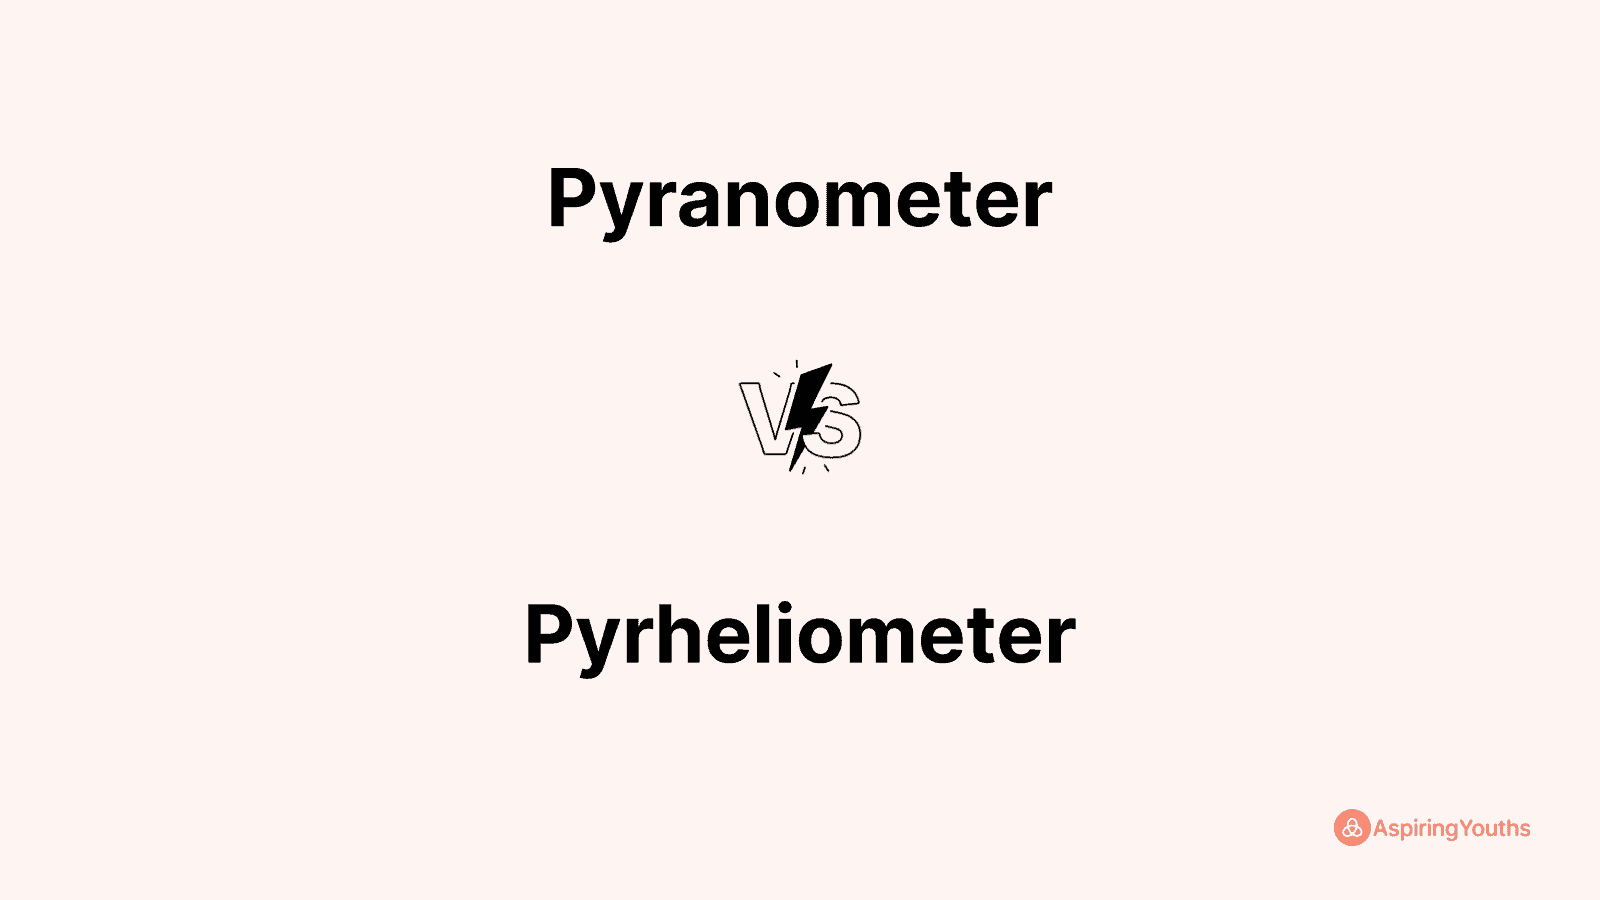 Pyranometer vs Pyrheliometer